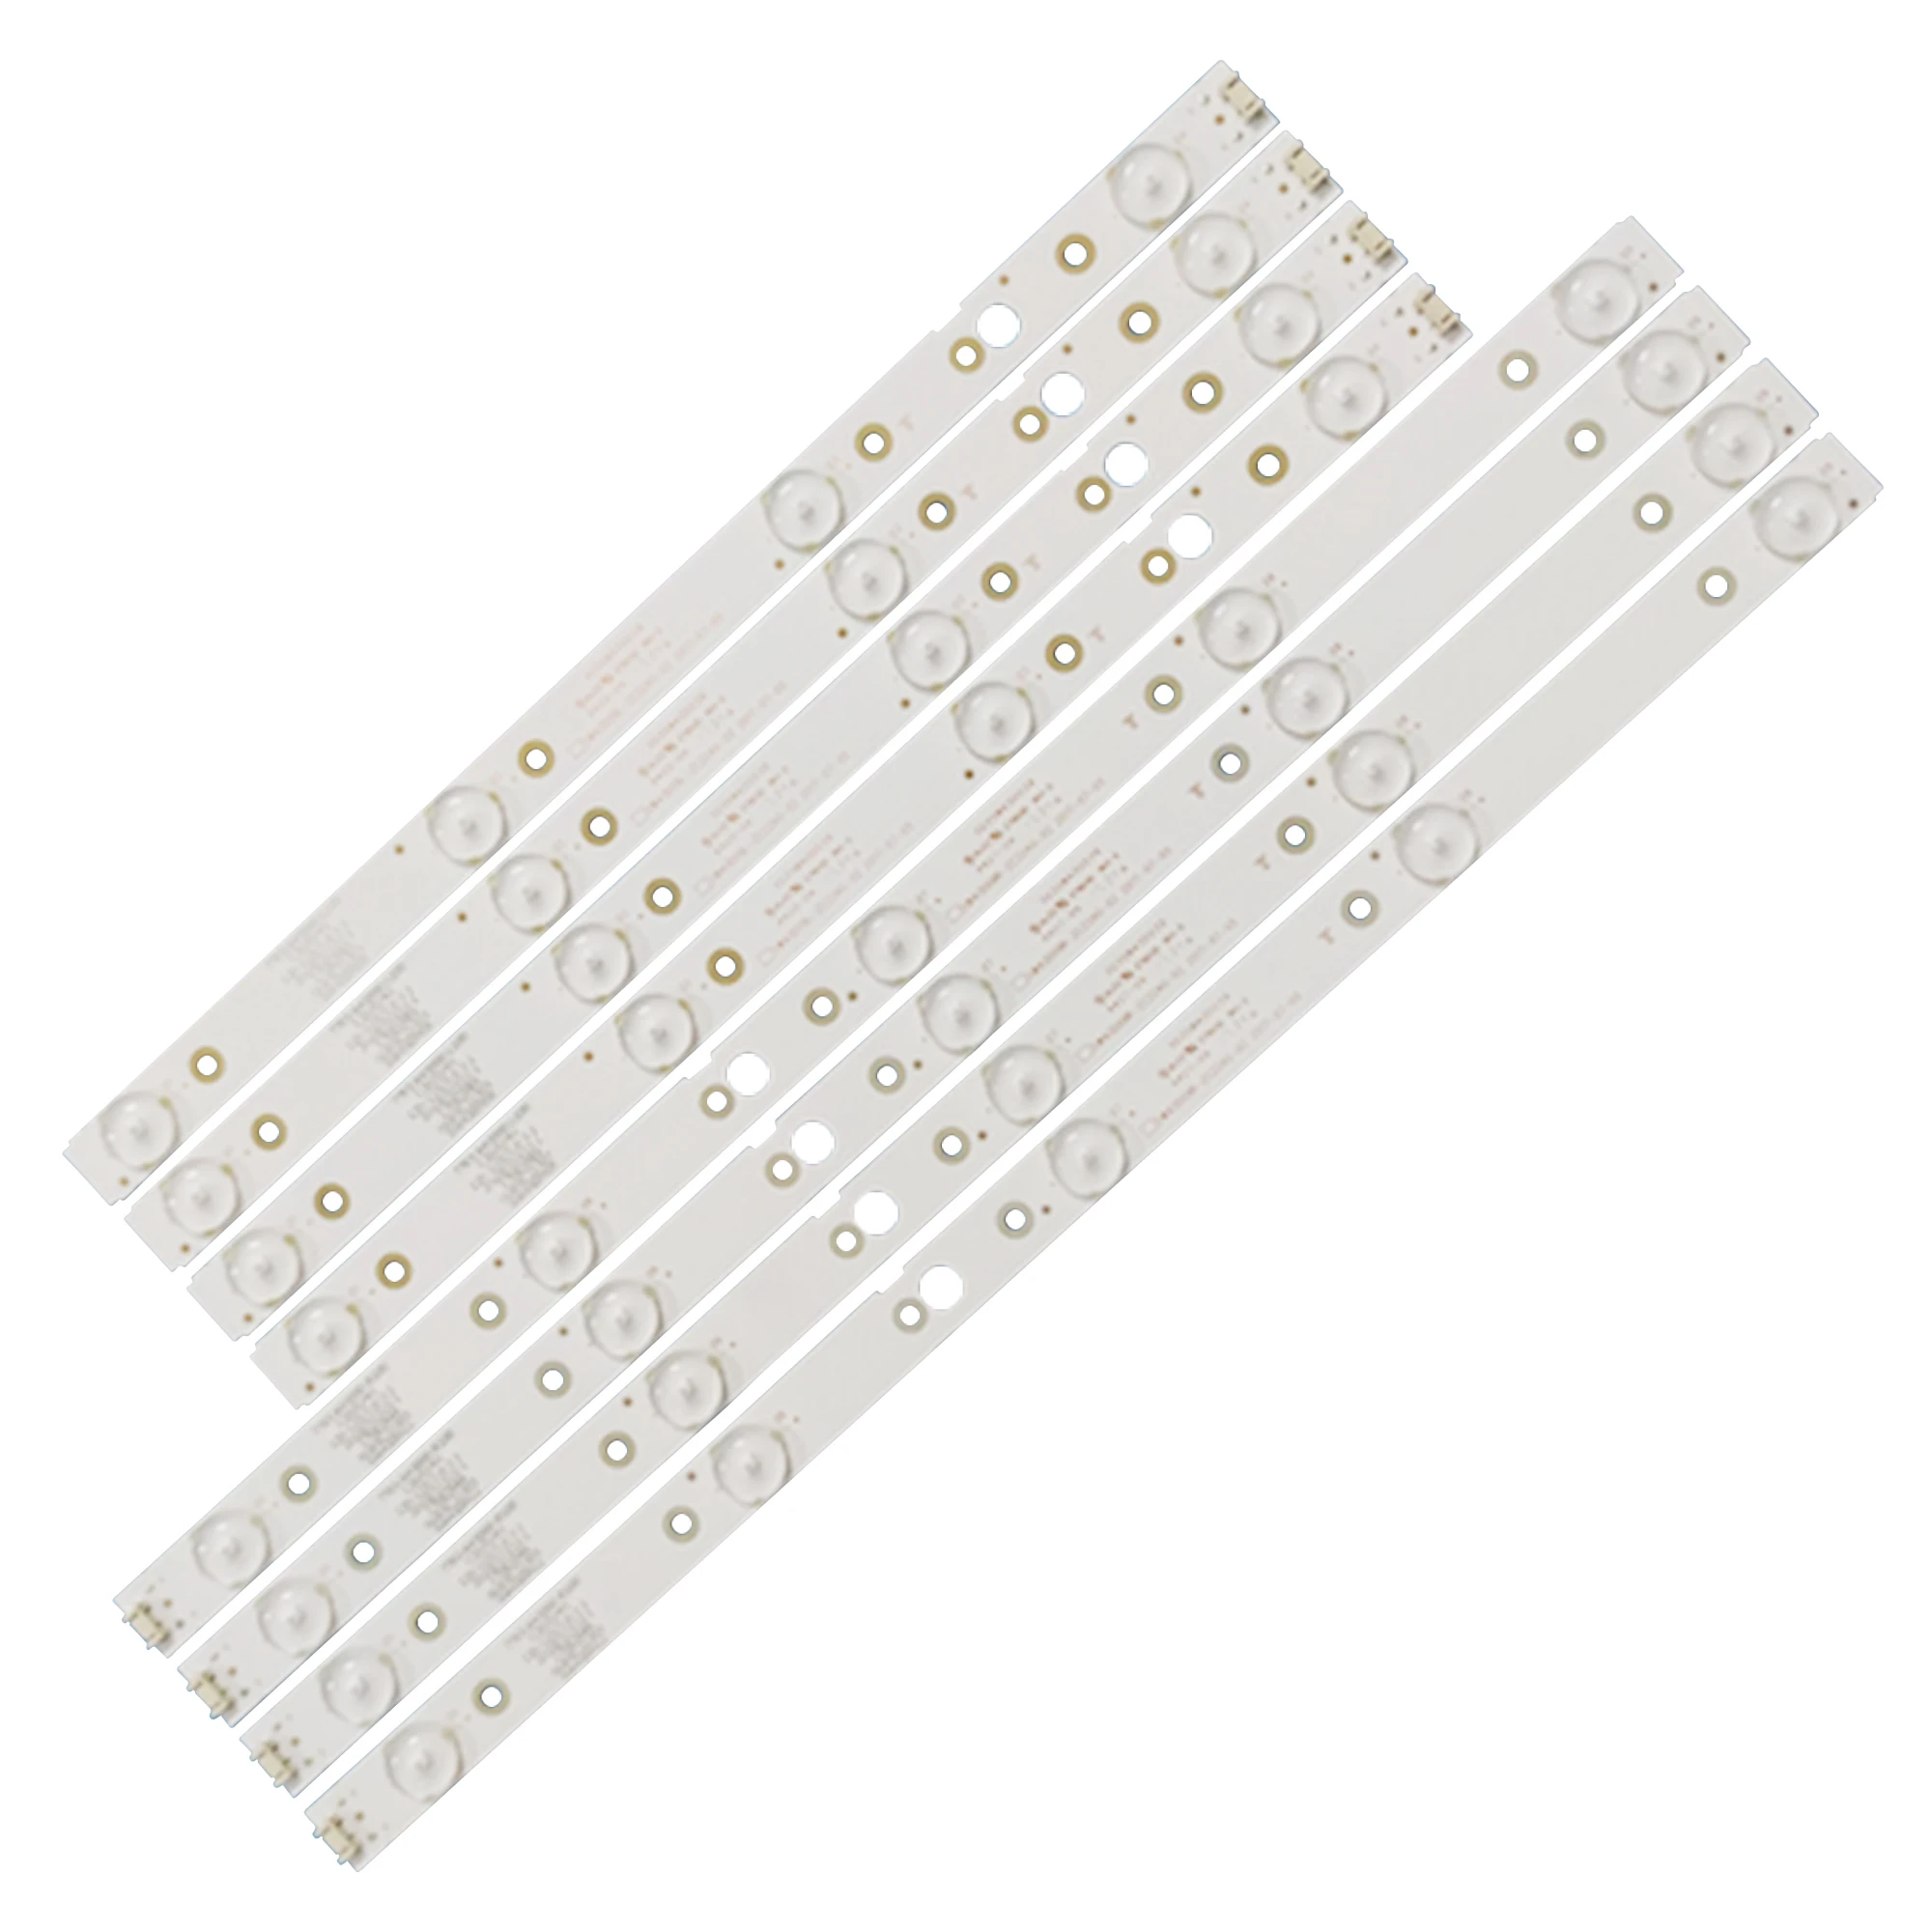 

8pcs/set LED strip for LG 43UJ620V 43UJ6200 CRH-A4330300104L6CNRev1.0 CRH-A4330300105R6CNRev1.0 CRH-A4330300105R74C